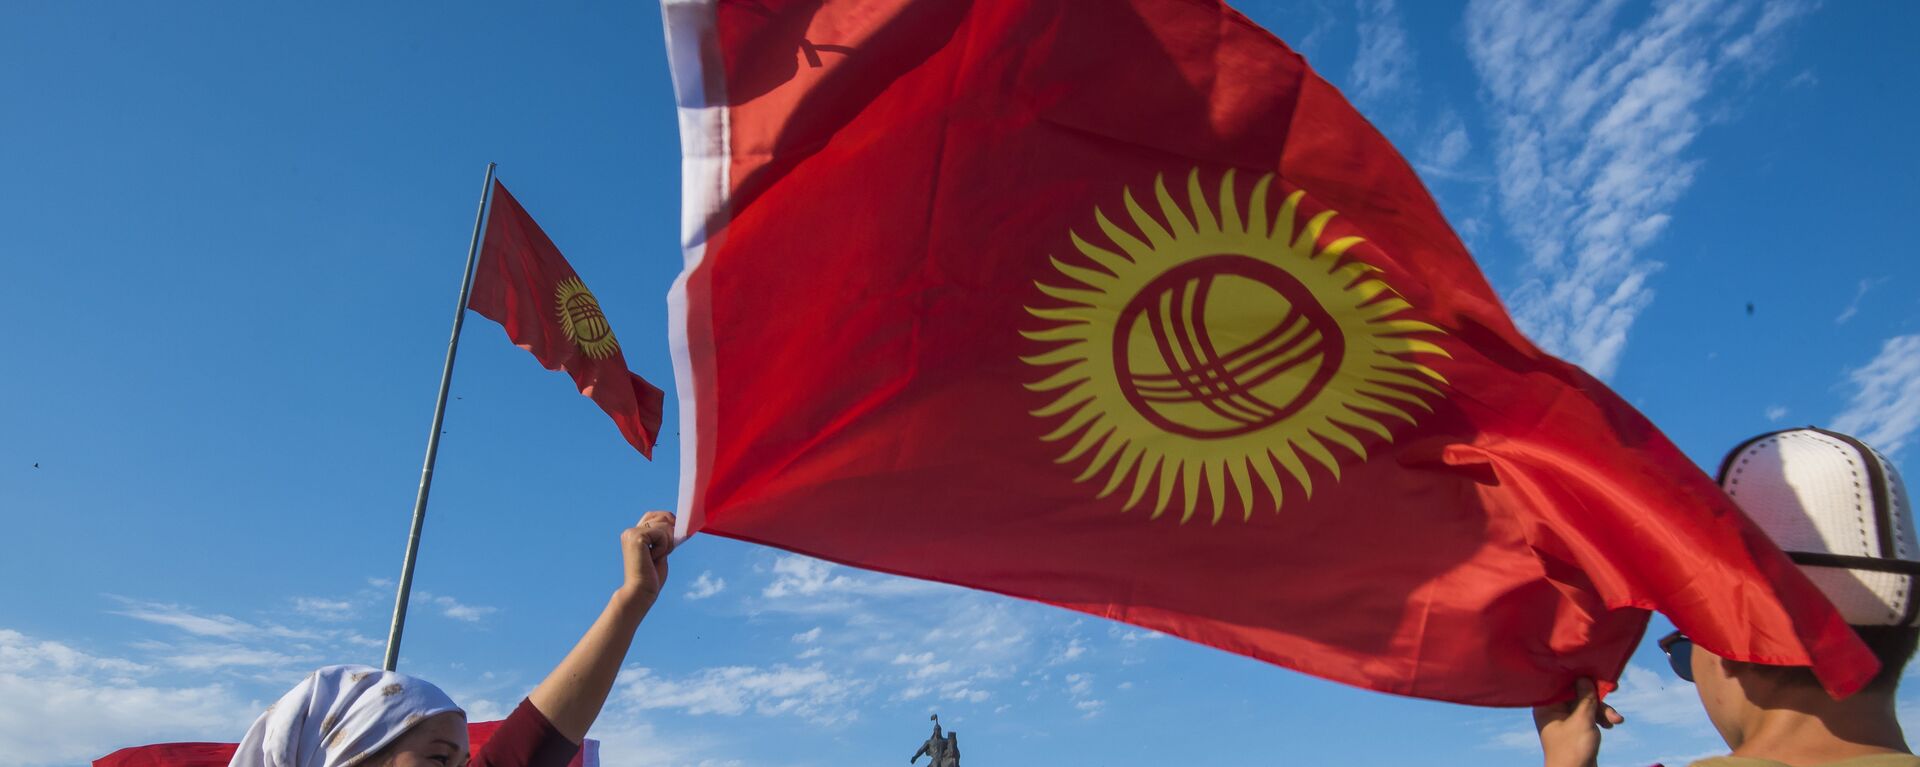 Люди с национальным флагом на площади Ала-Тоо в Бишкеке. Архивное фото - Sputnik Кыргызстан, 1920, 20.09.2021